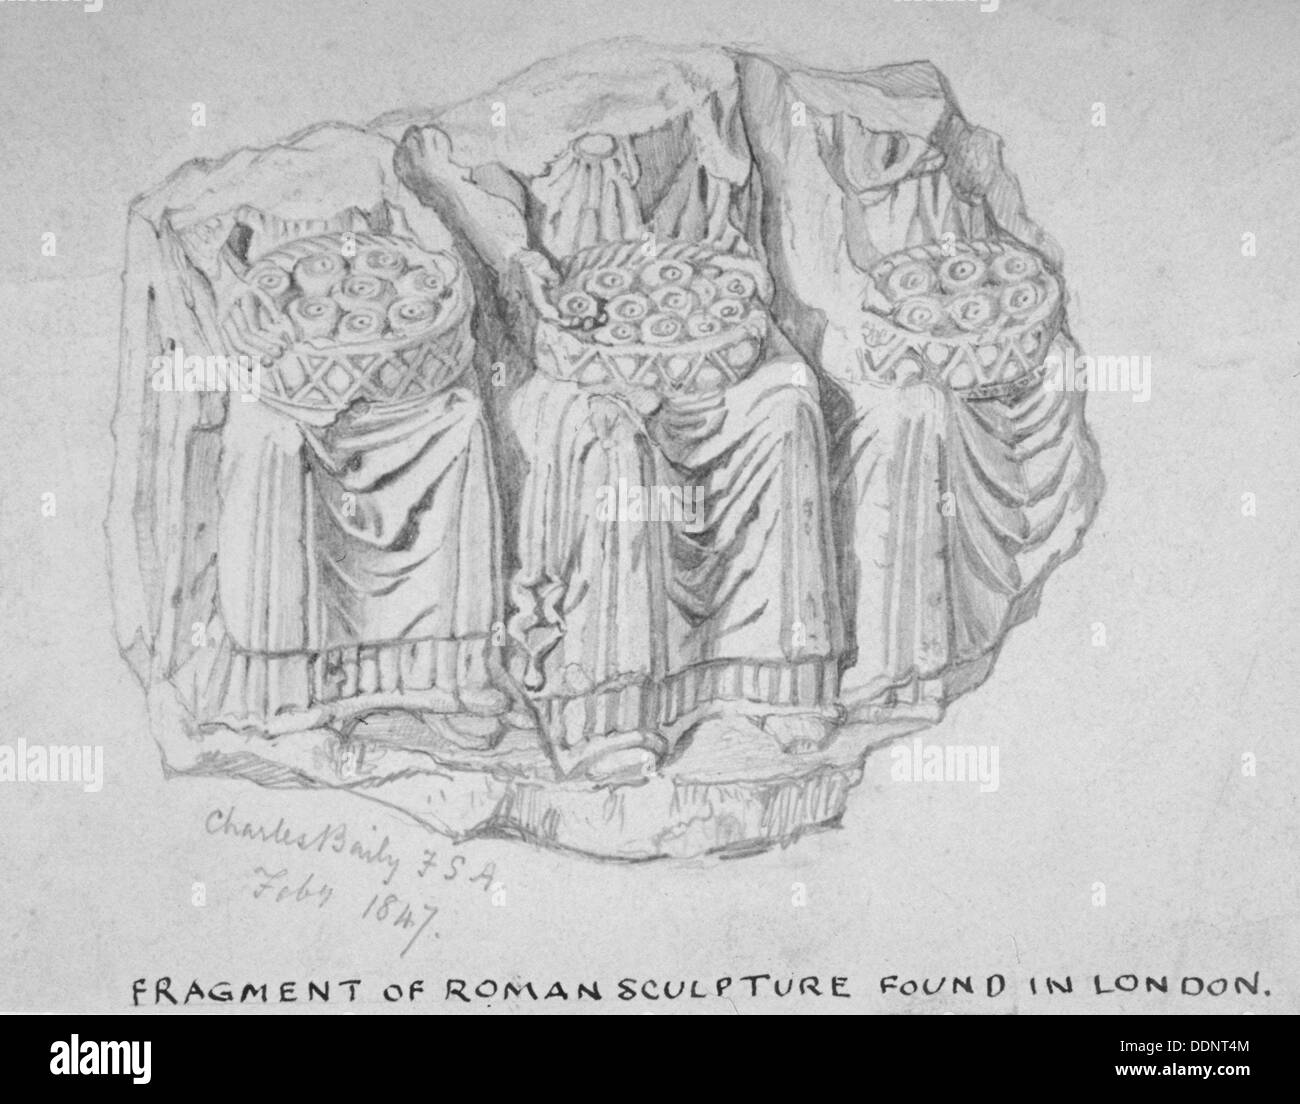 Fragment de sculpture romaine trouvés dans la rue, les Frères Hart béquilles, ville de Londres, 1847. Artiste : Charles Baily Banque D'Images